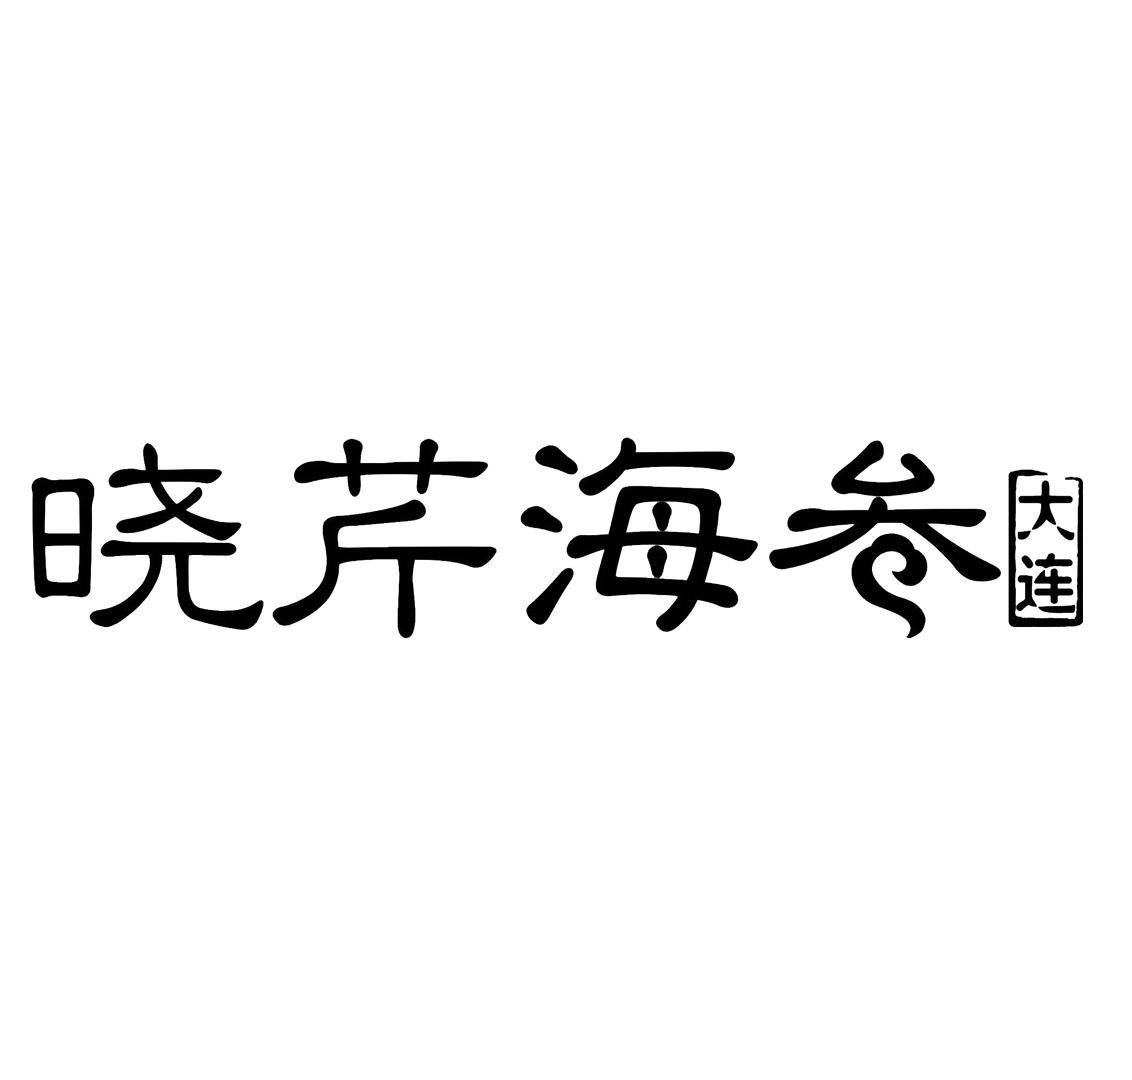 海参logo设计说明图片